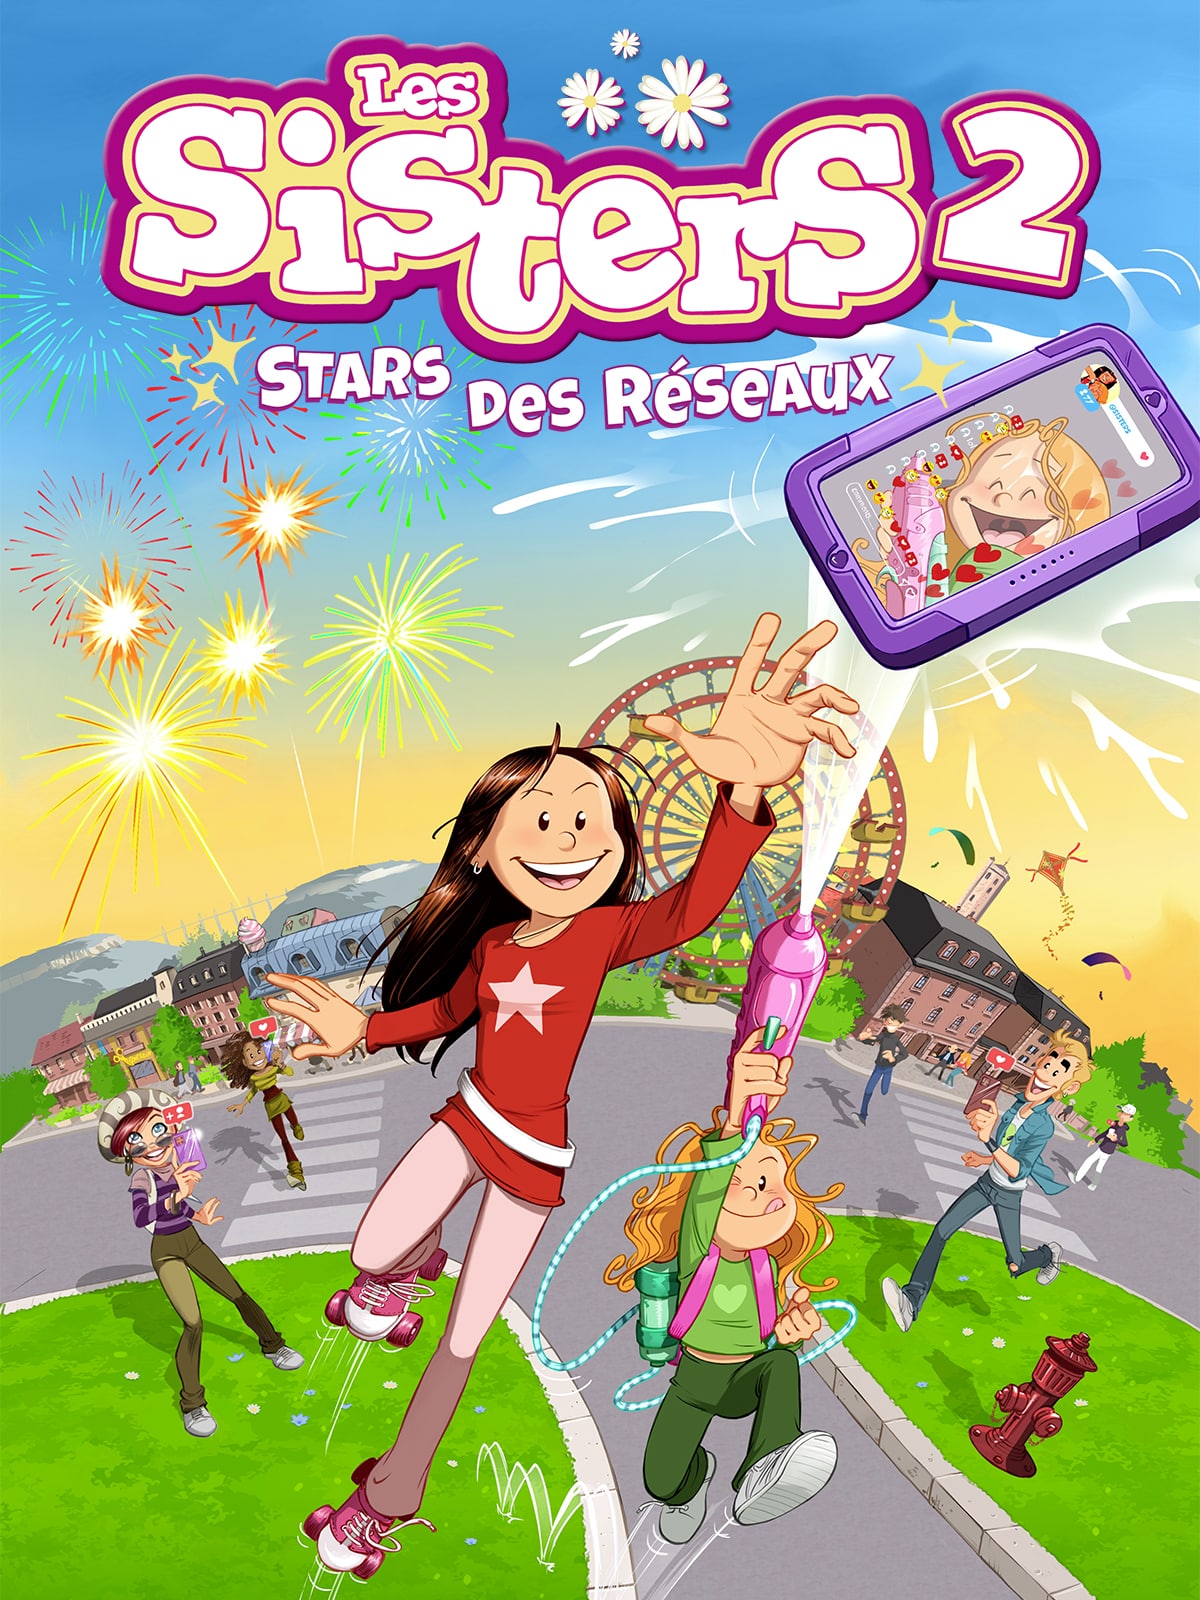 Le jeu vidéo “Les Sisters 2 : Stars des réseaux” sort en octobre